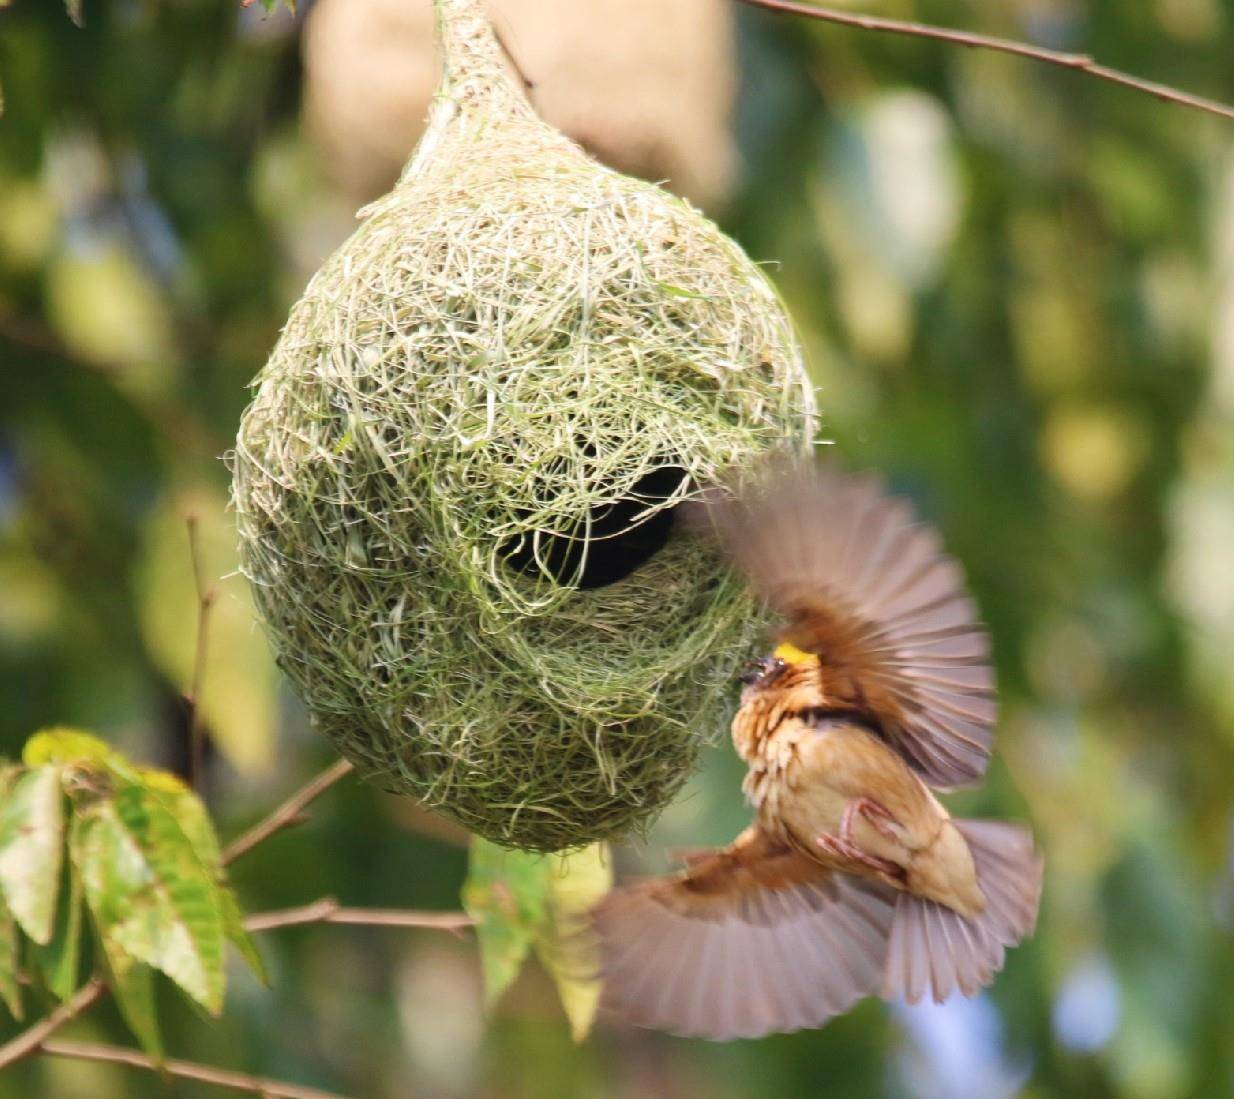 黄胸织布鸟扎堆筑巢 近百个鸟巢筑在一起甚为壮观